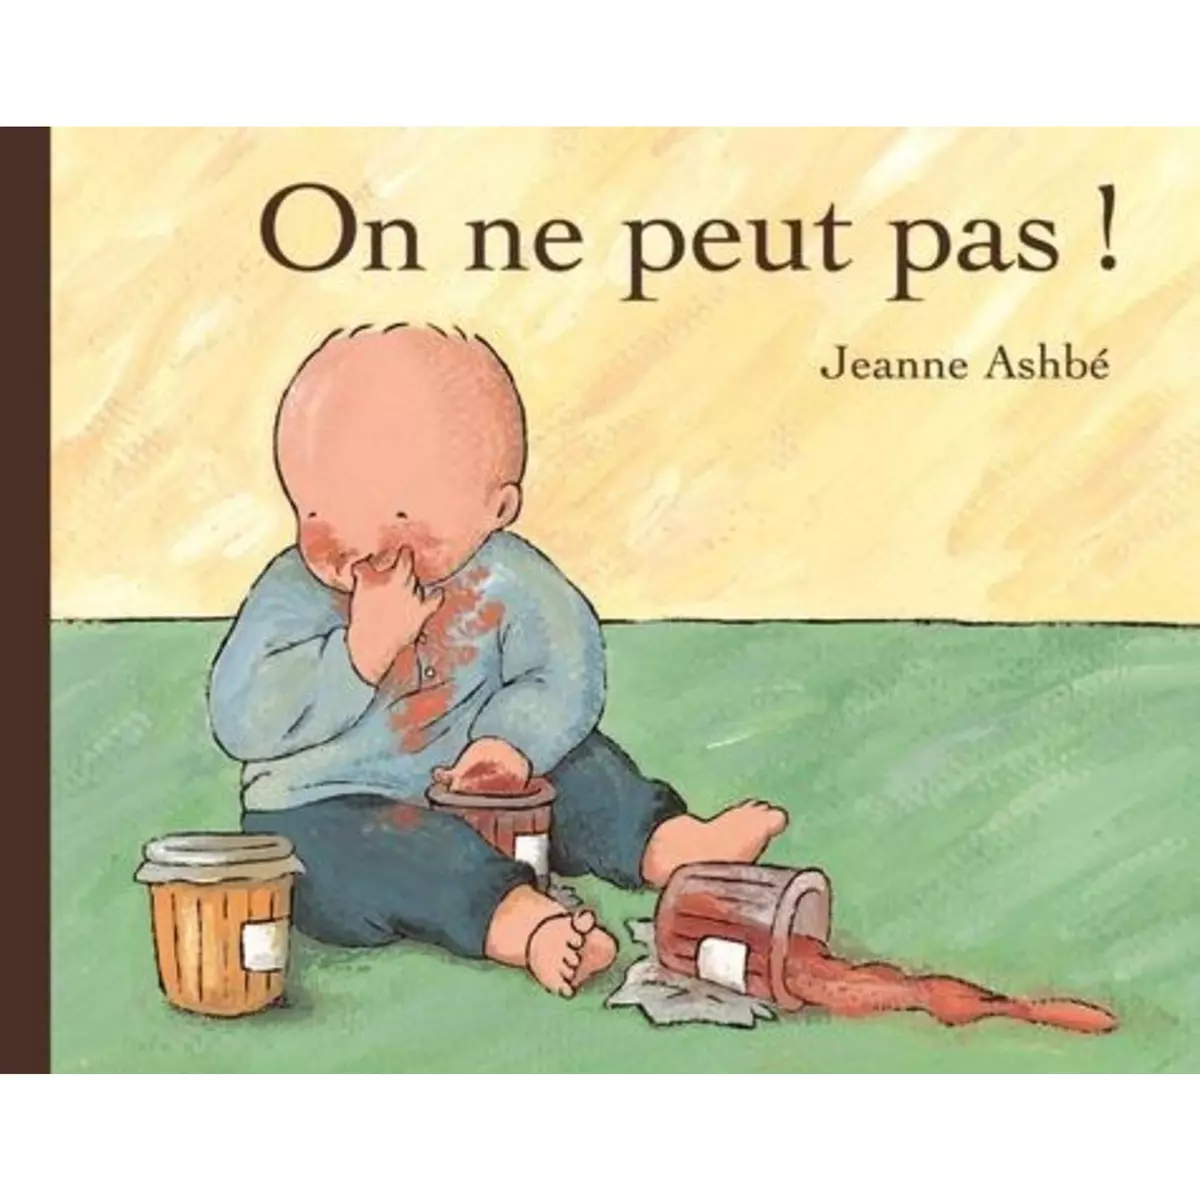  ON NE PEUT PAS !, Ashbé Jeanne